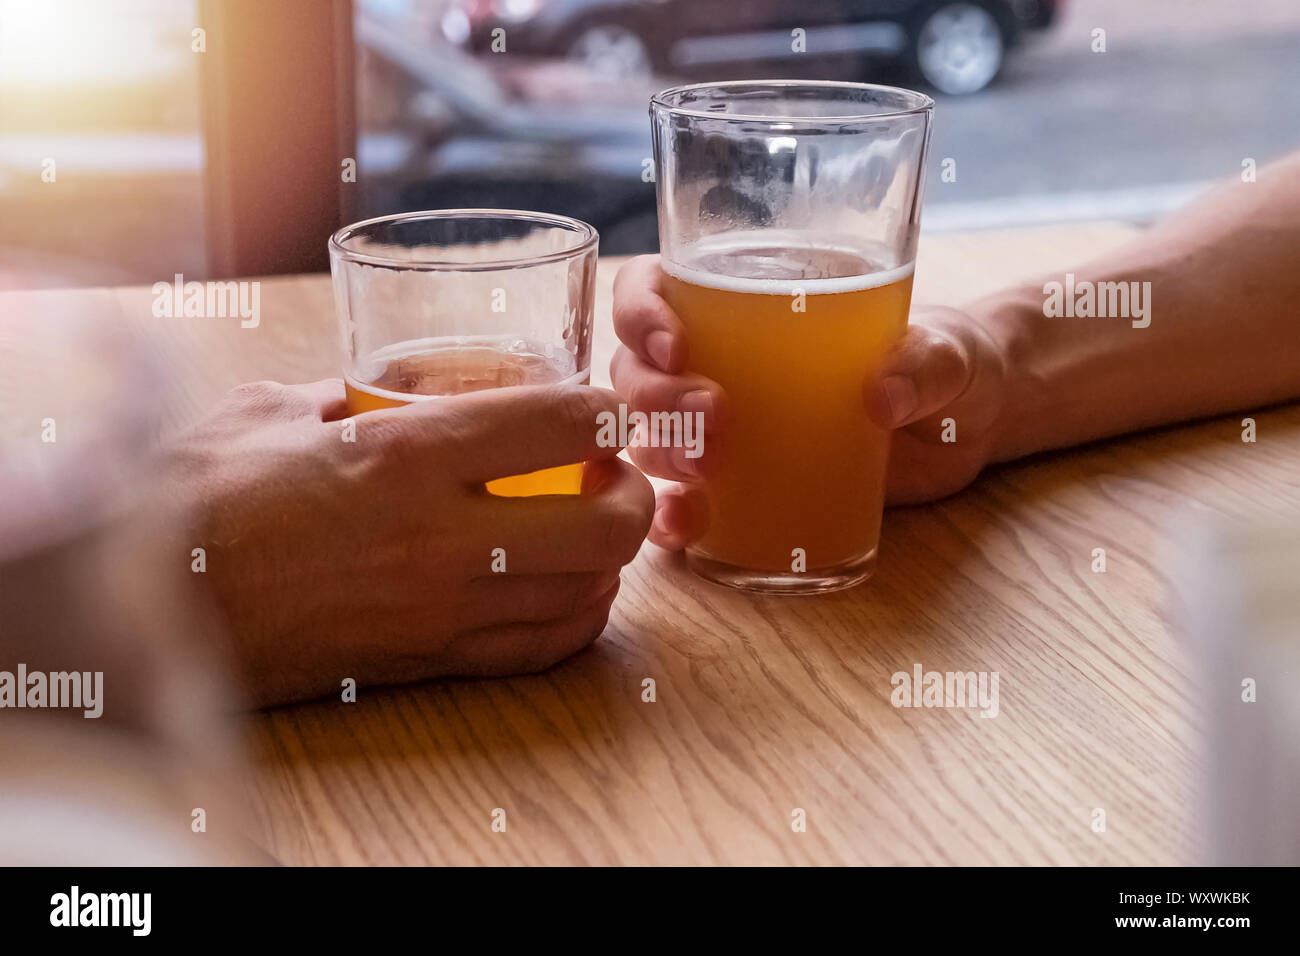 Man's hands holding deux verres de bière ou de trinquer au pub, close-up Banque D'Images